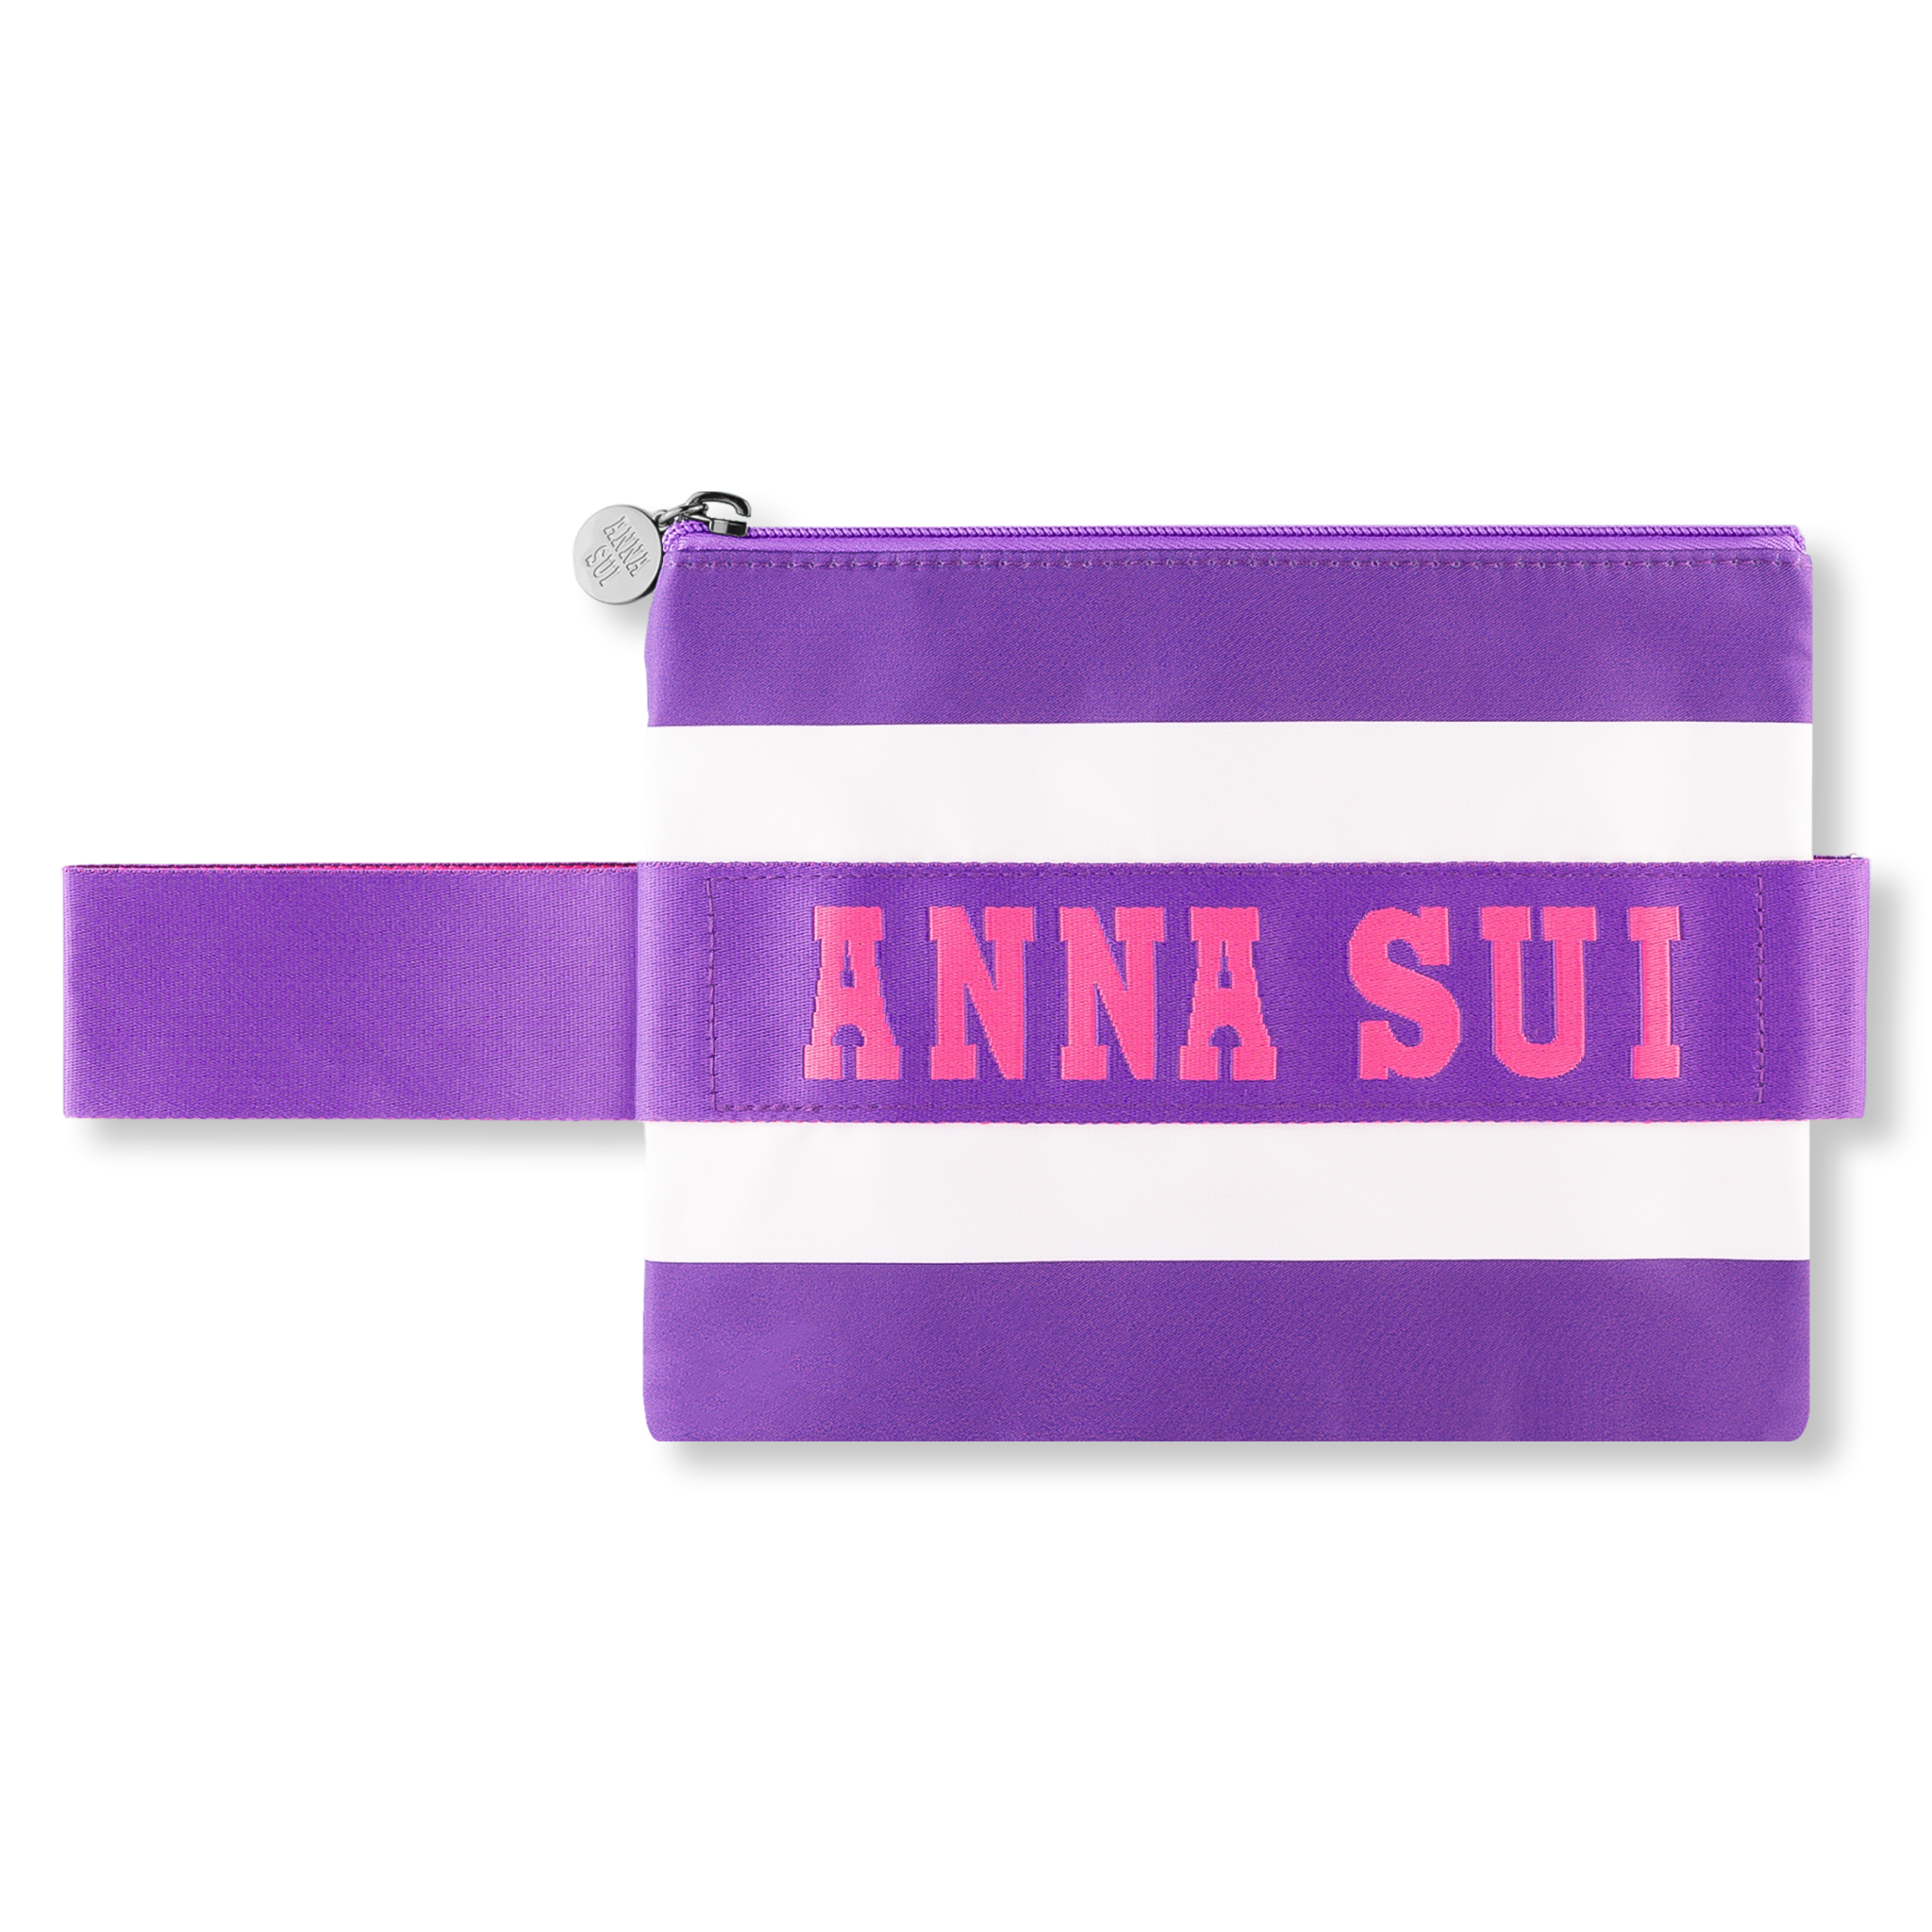 Anna Sui Original Duo Set